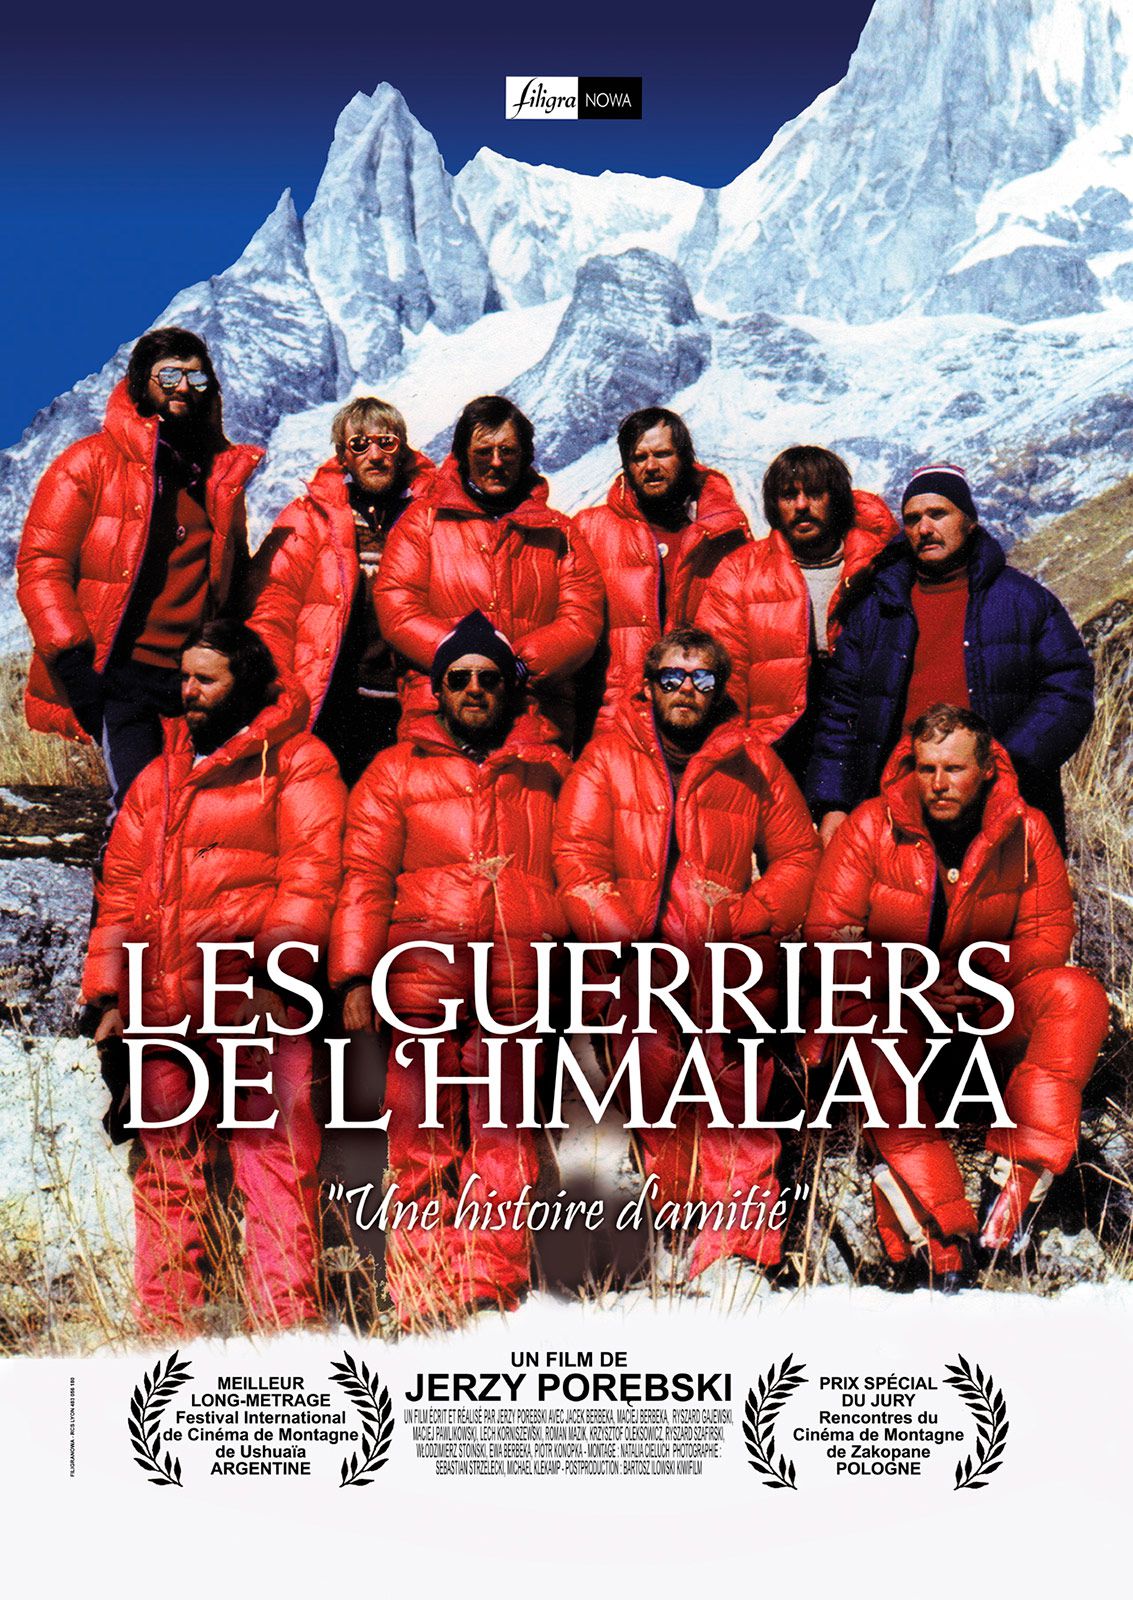 Les Guerriers de l'Himalaya - Documentaire (2014)